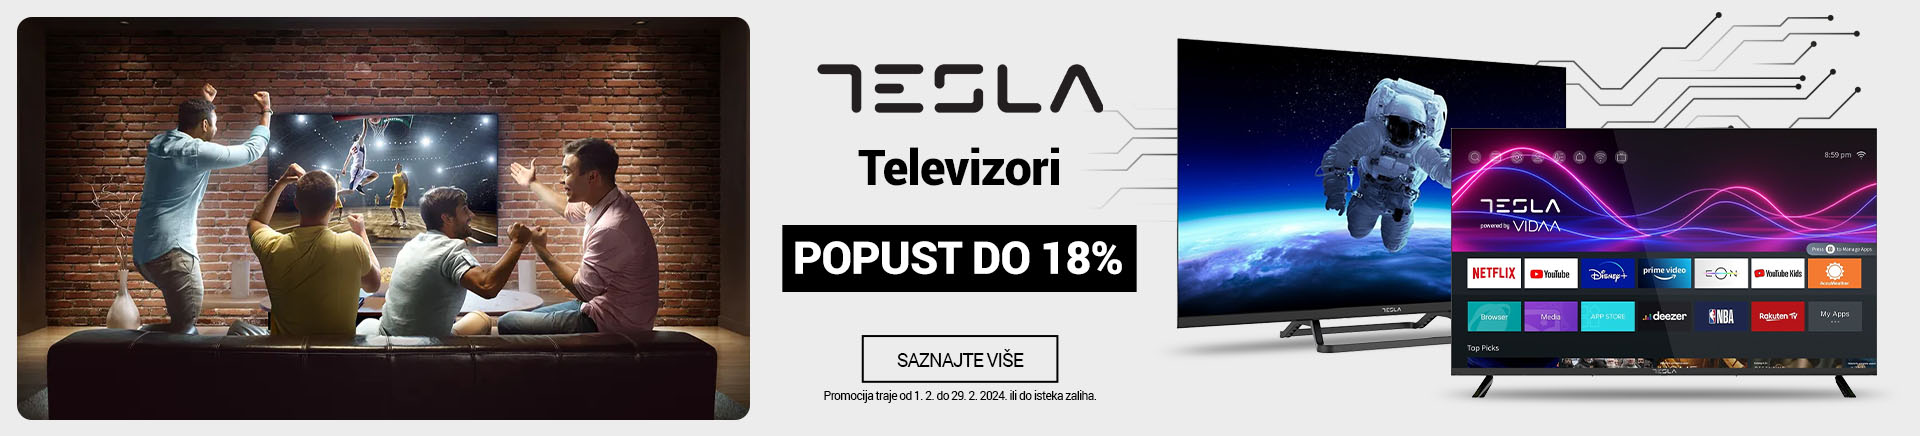 HR Tesla televizori TV 18posto MOBILE za APP 760x872.jpg